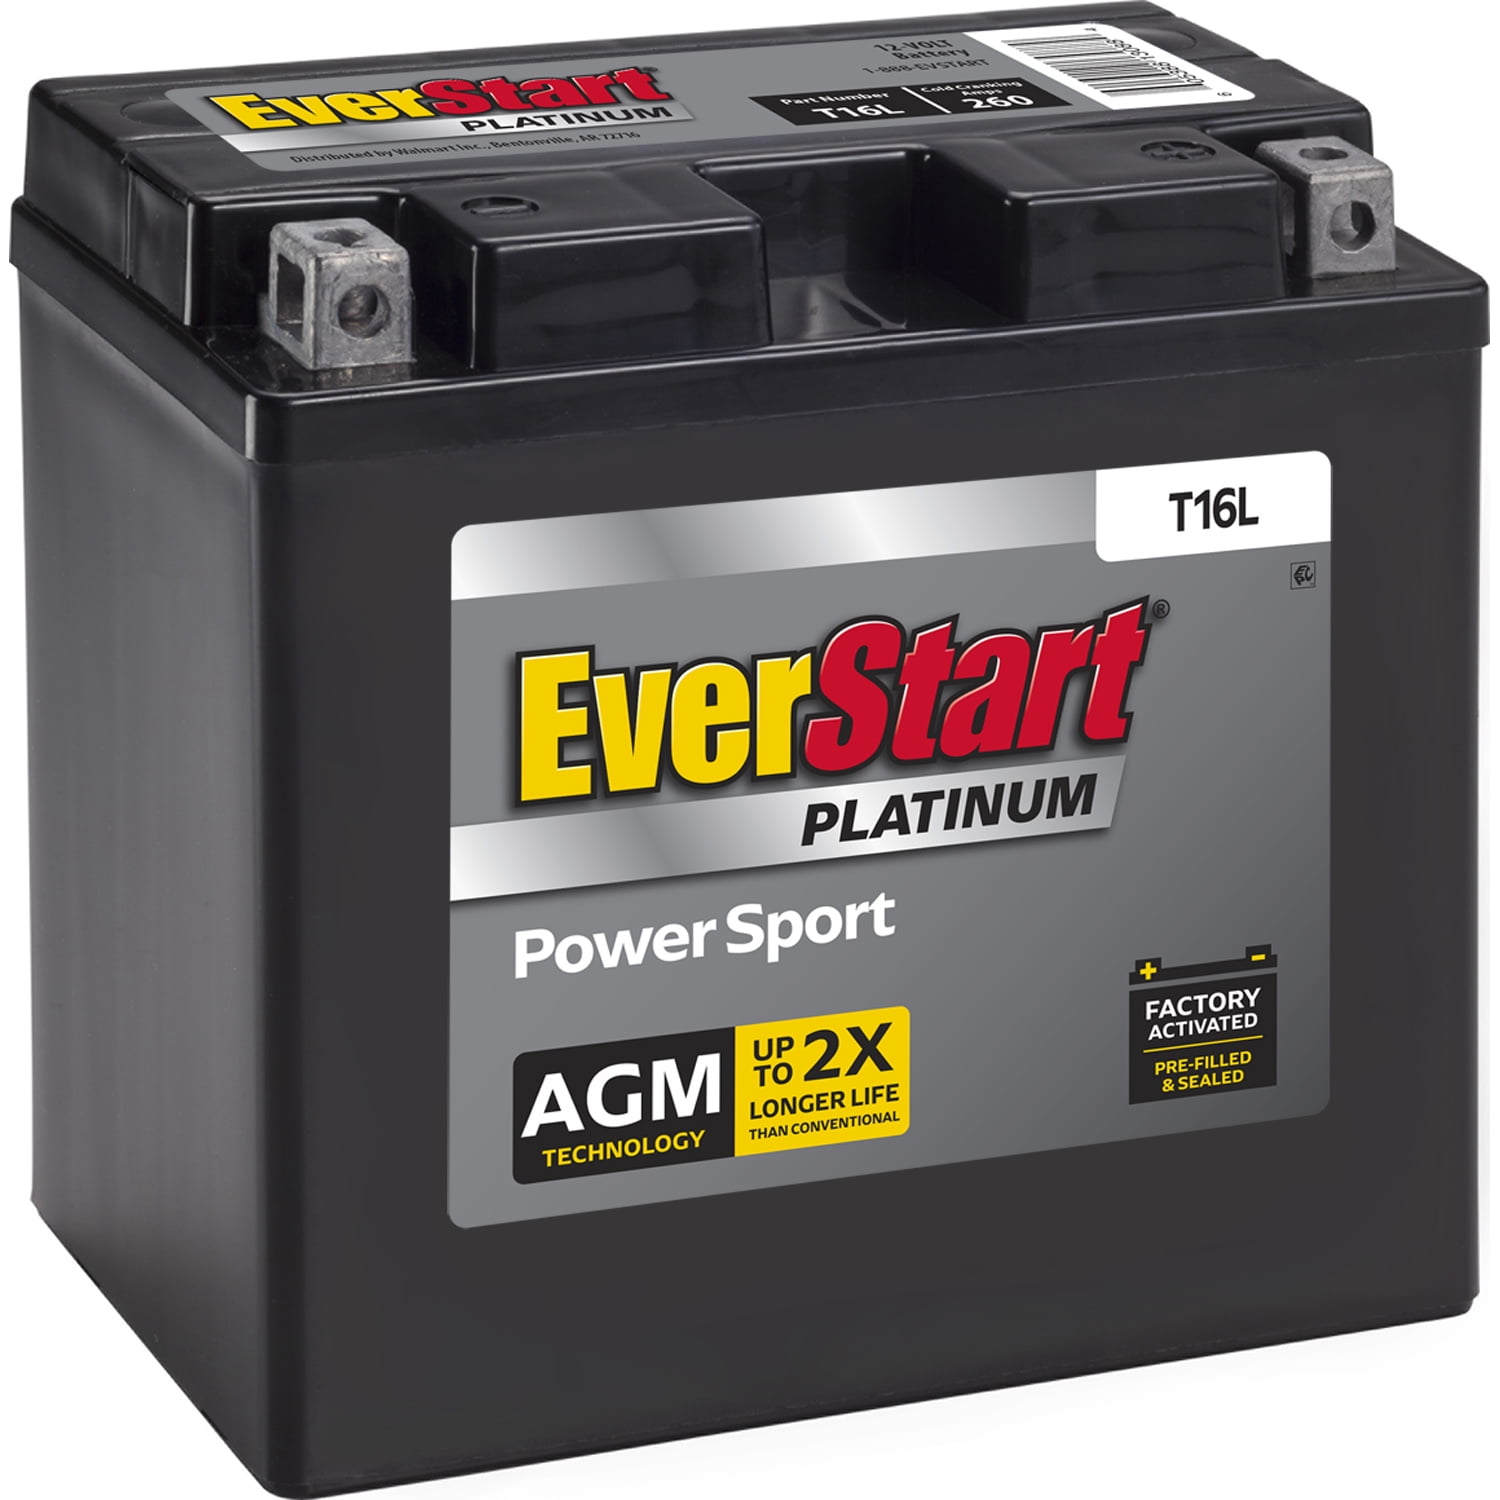 EverStart Premium AGM Power Sport Battery, Group Size T16L 12 Volt, 260 CCA